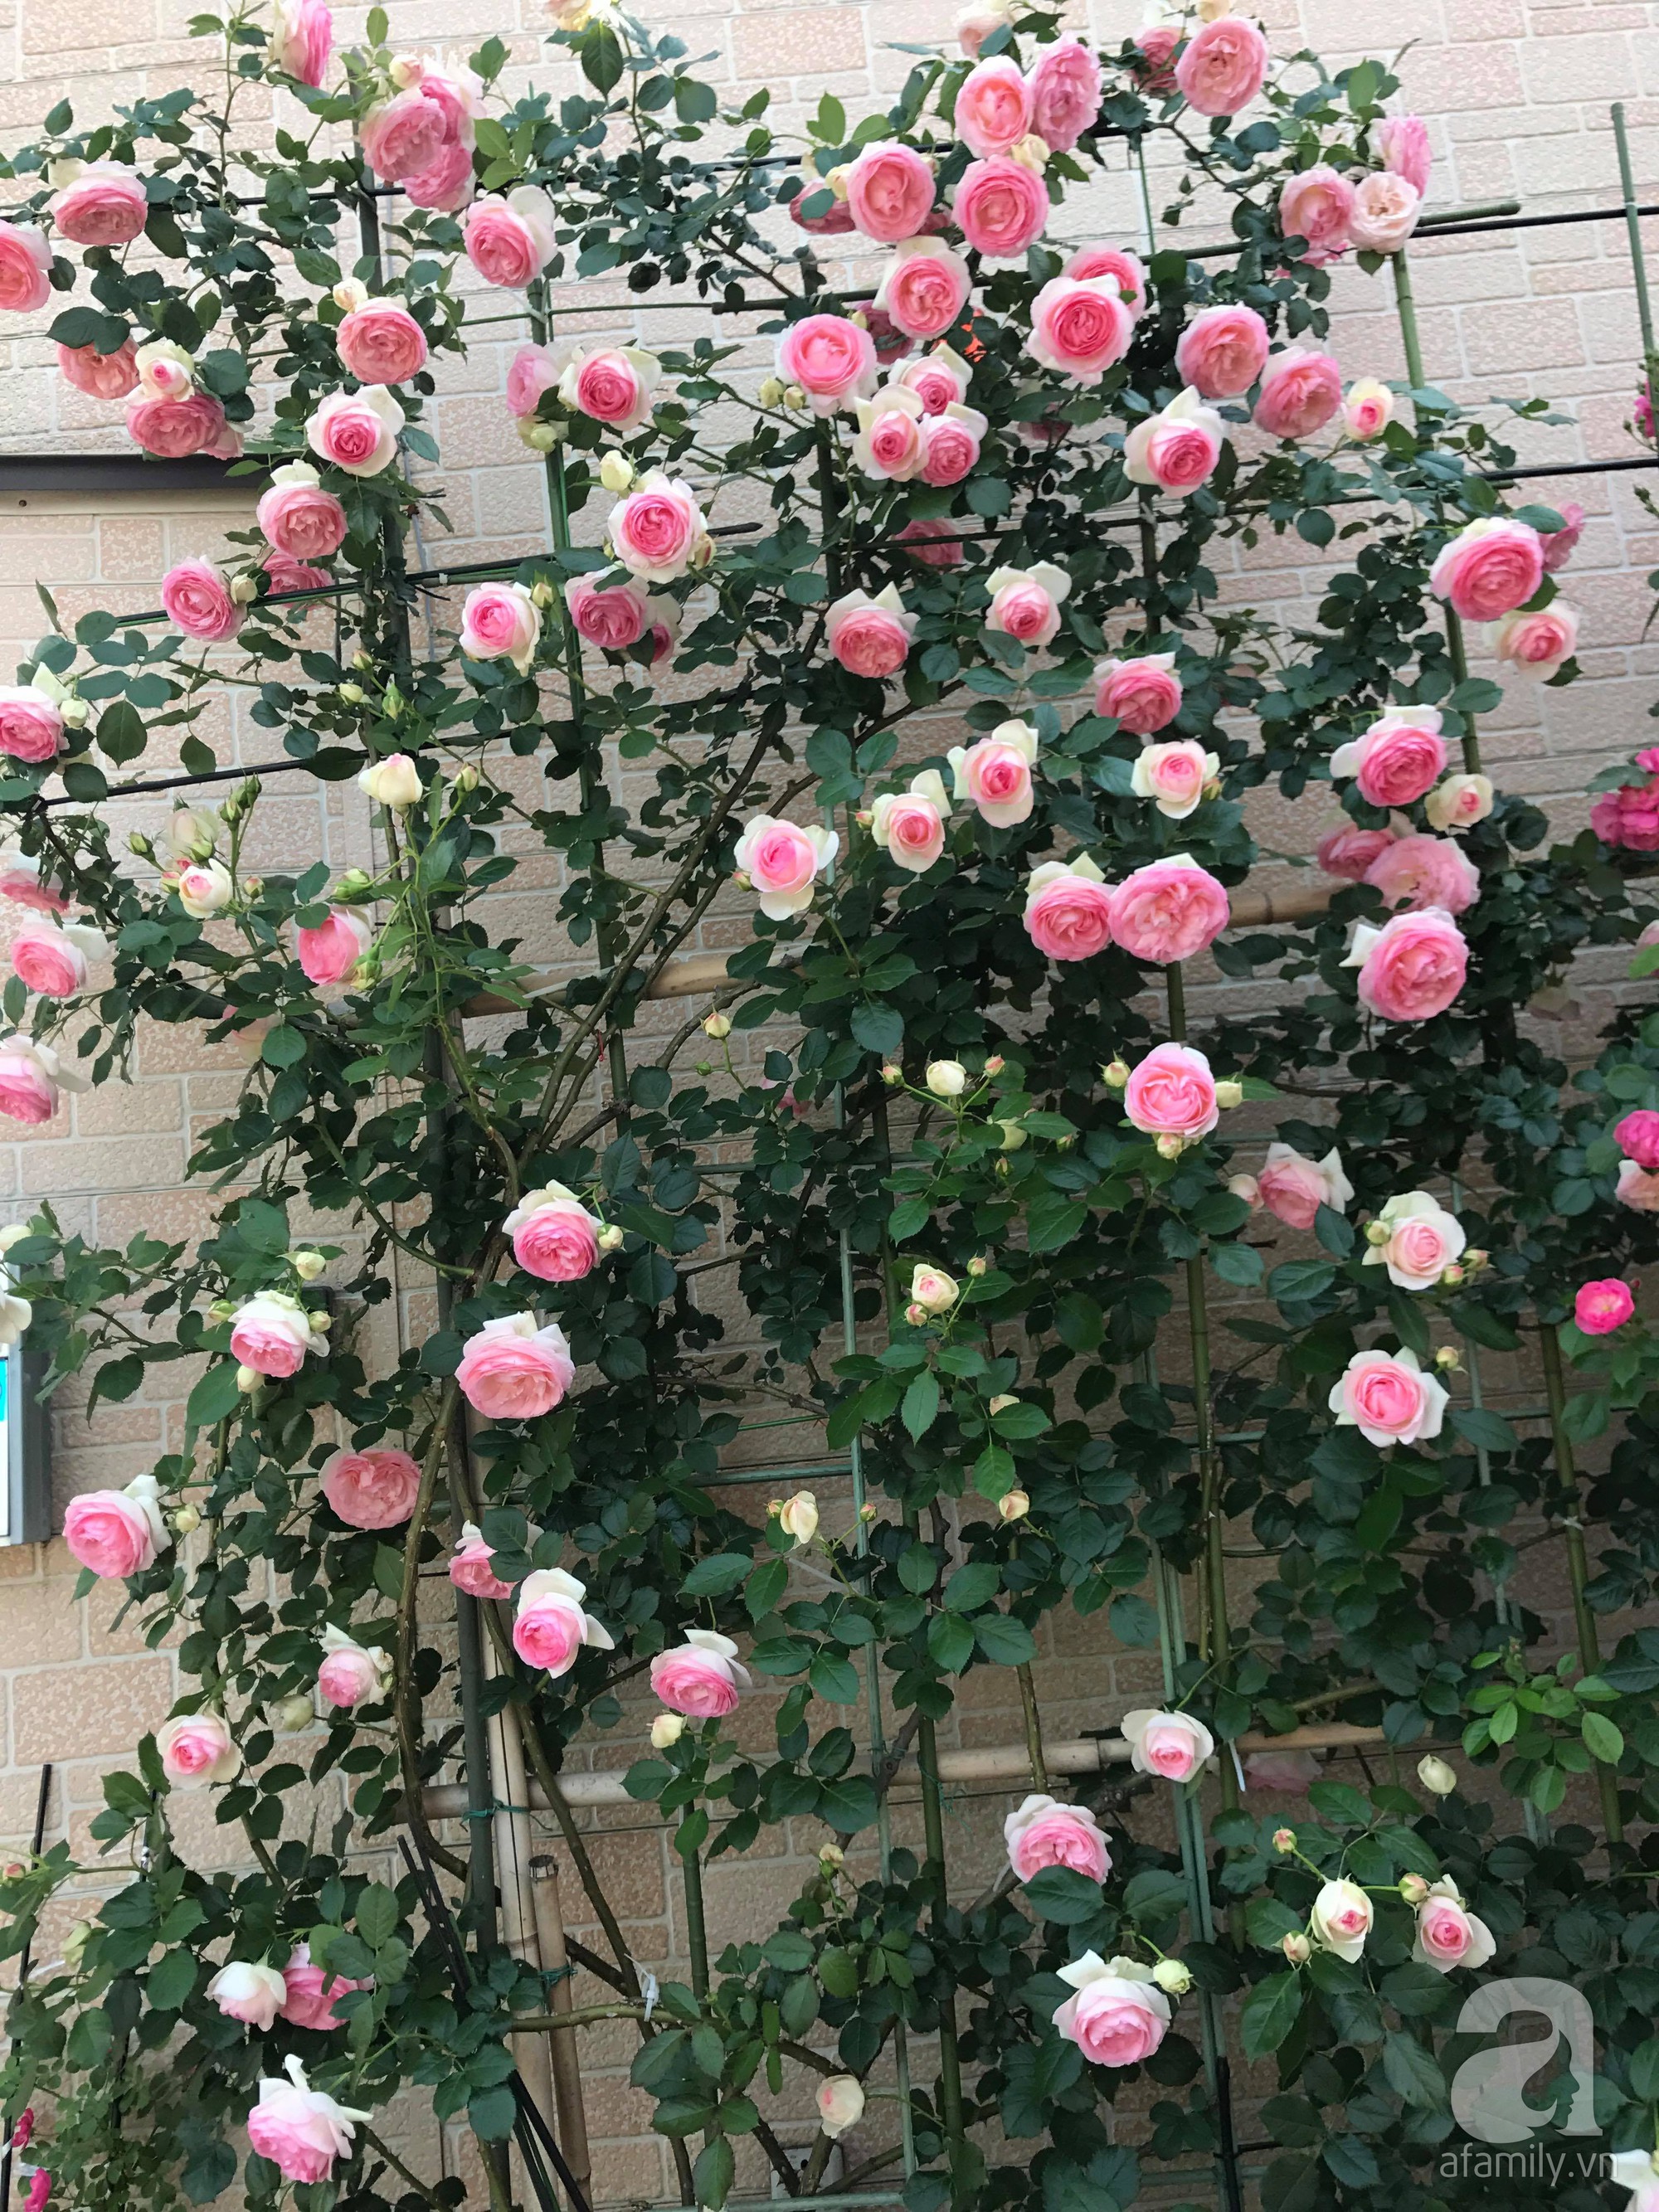 Bức tường hoa hồng đẹp như mơ trong sân vườn vỏn vẹn 6m² của người phụ nữ bỏ ra 5 năm miệt mài chăm sóc - Ảnh 6.